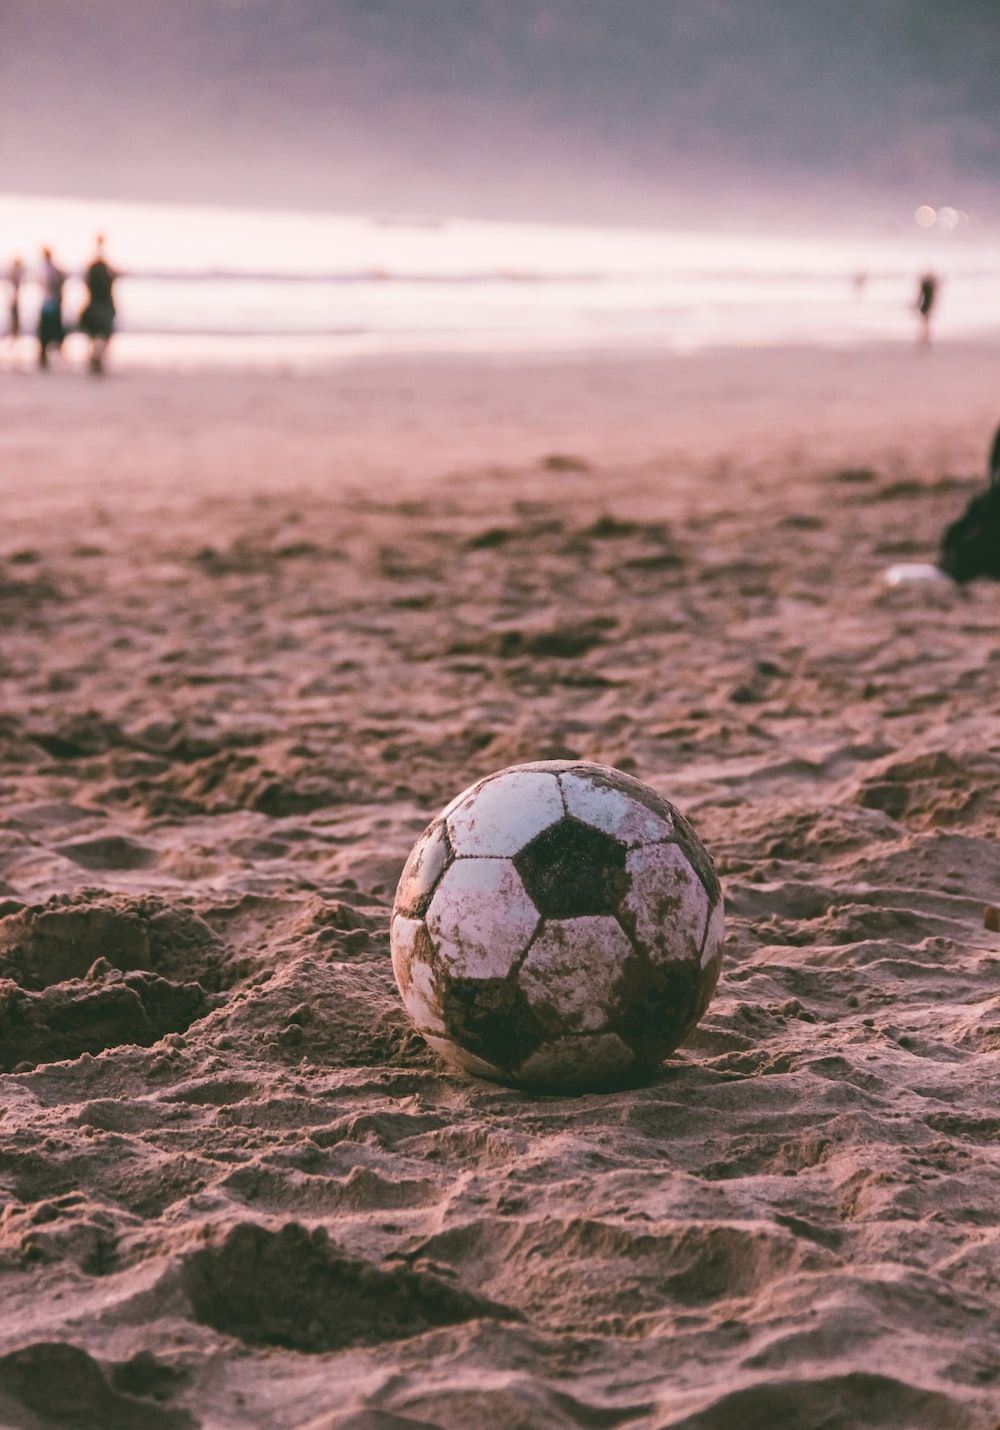 A soccer ball on the beach - Soccer